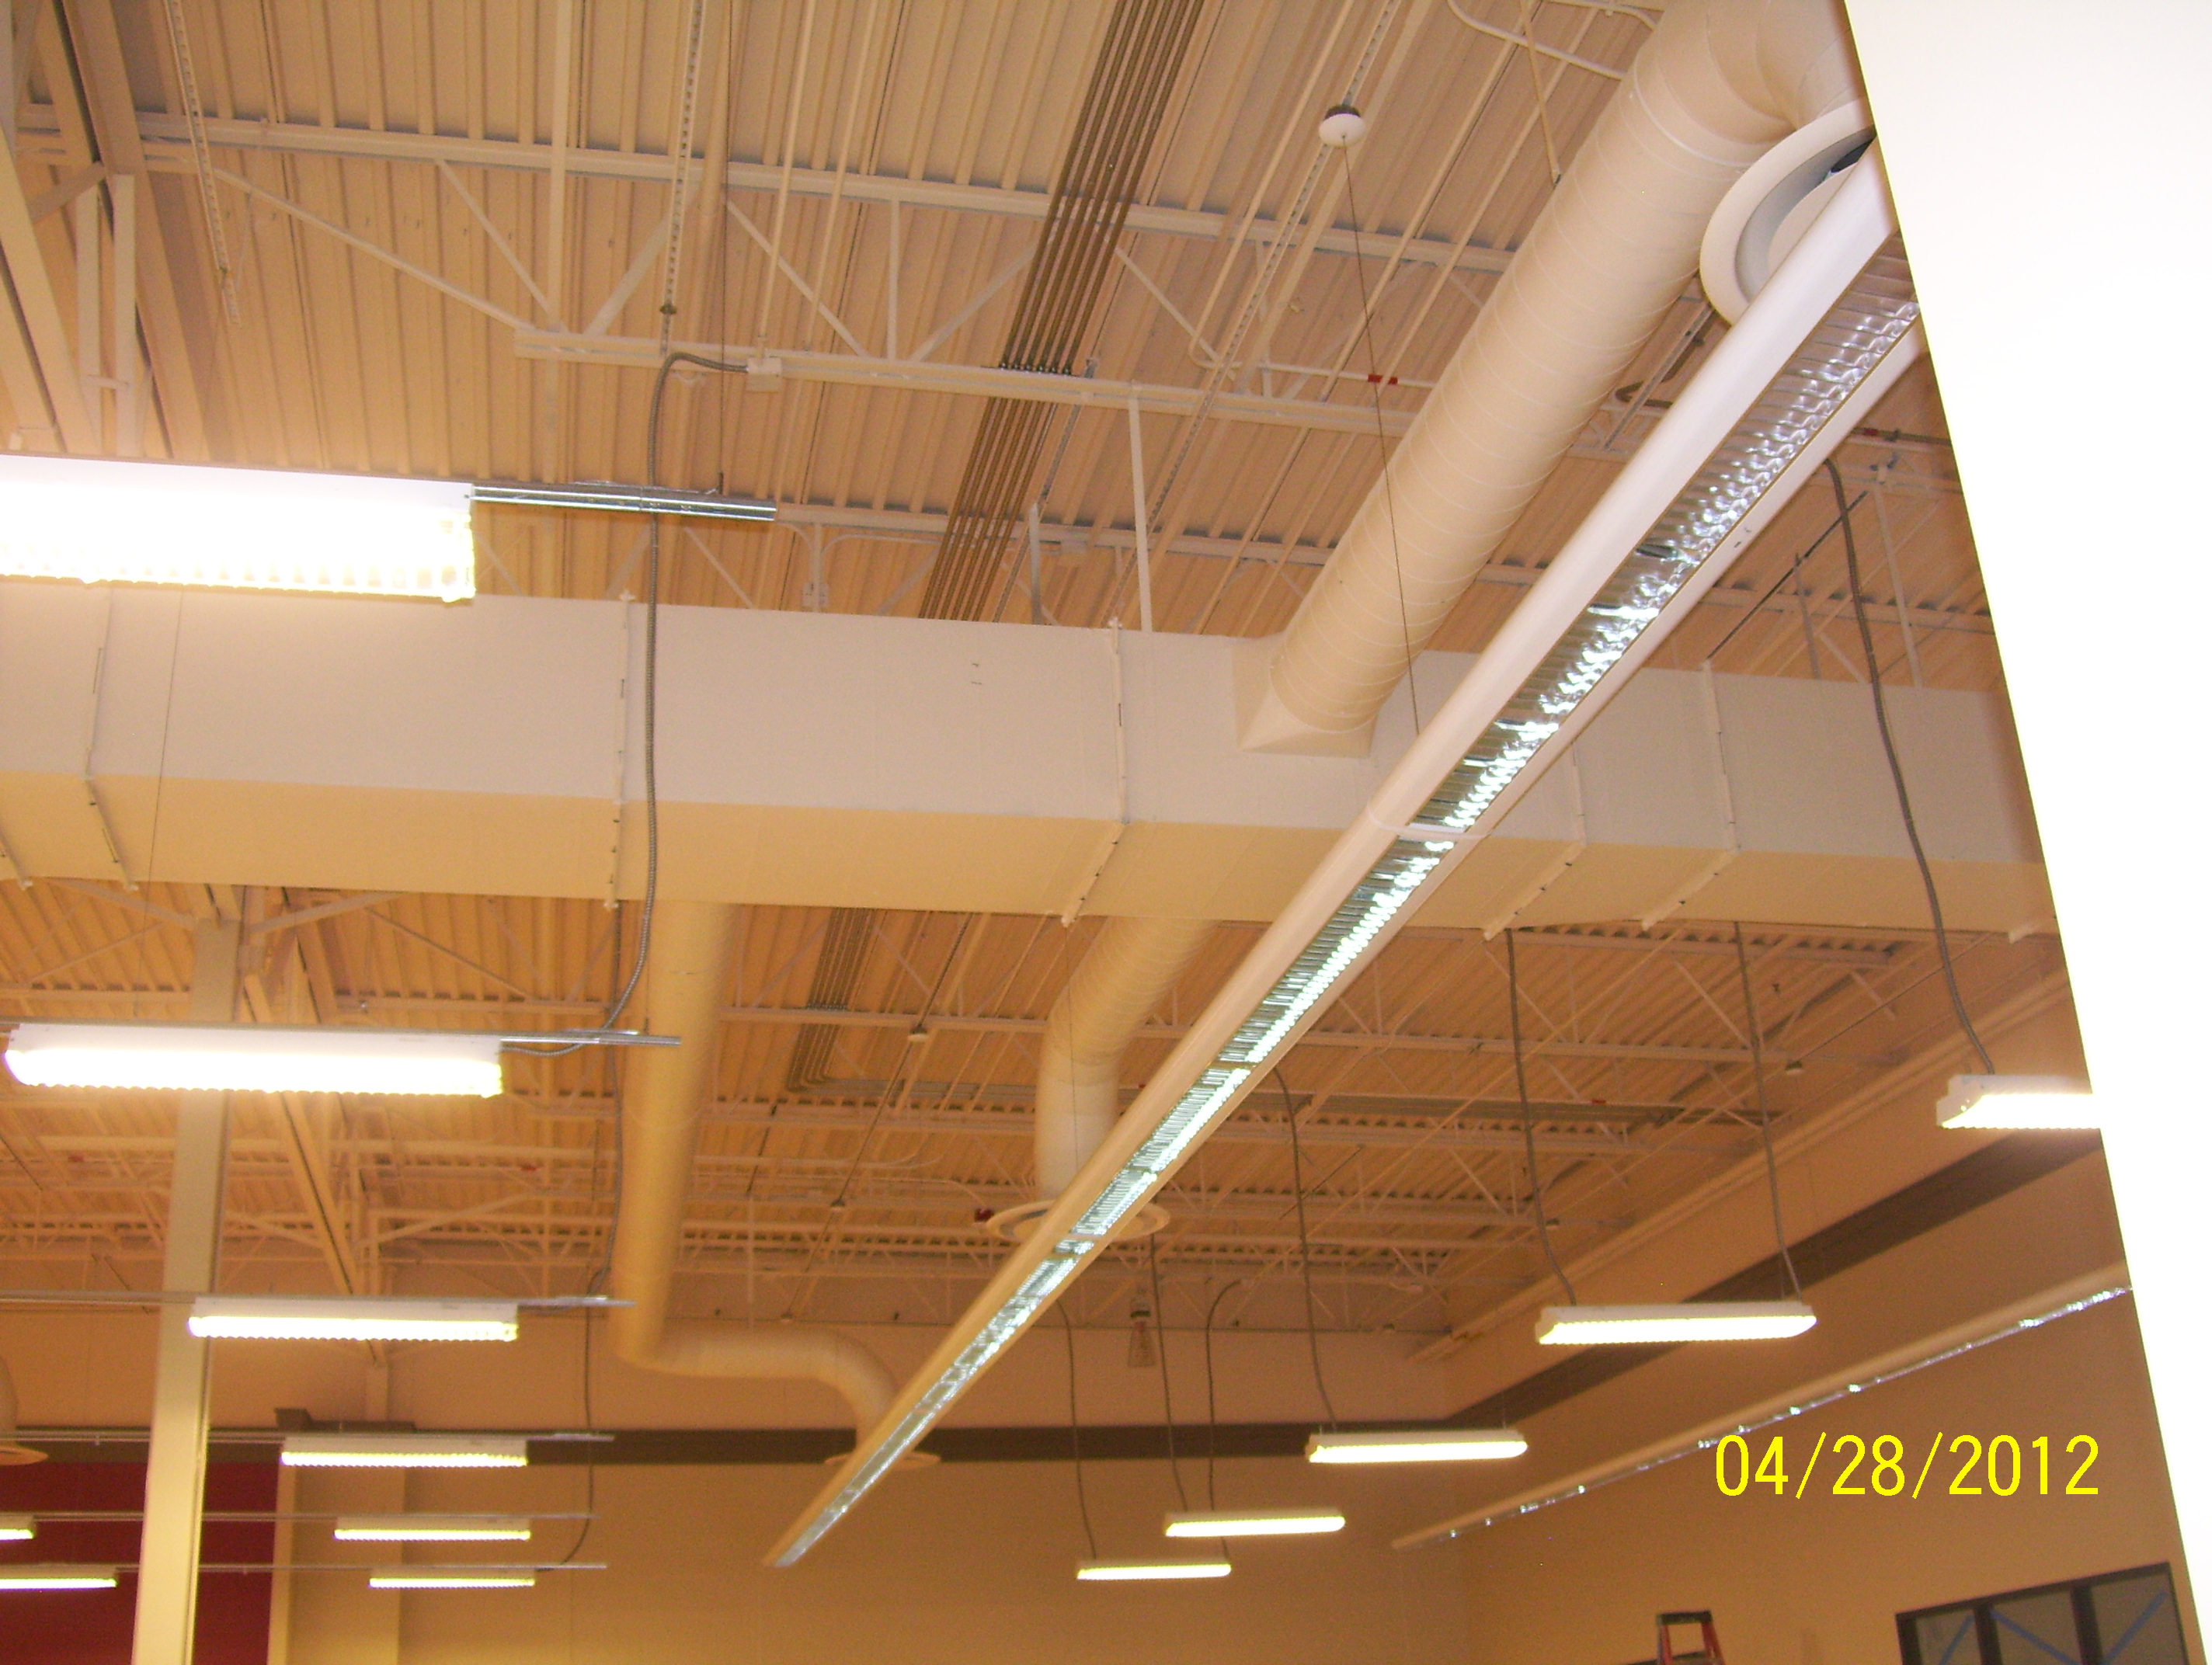 malmstrom-shopping-center-ceiling